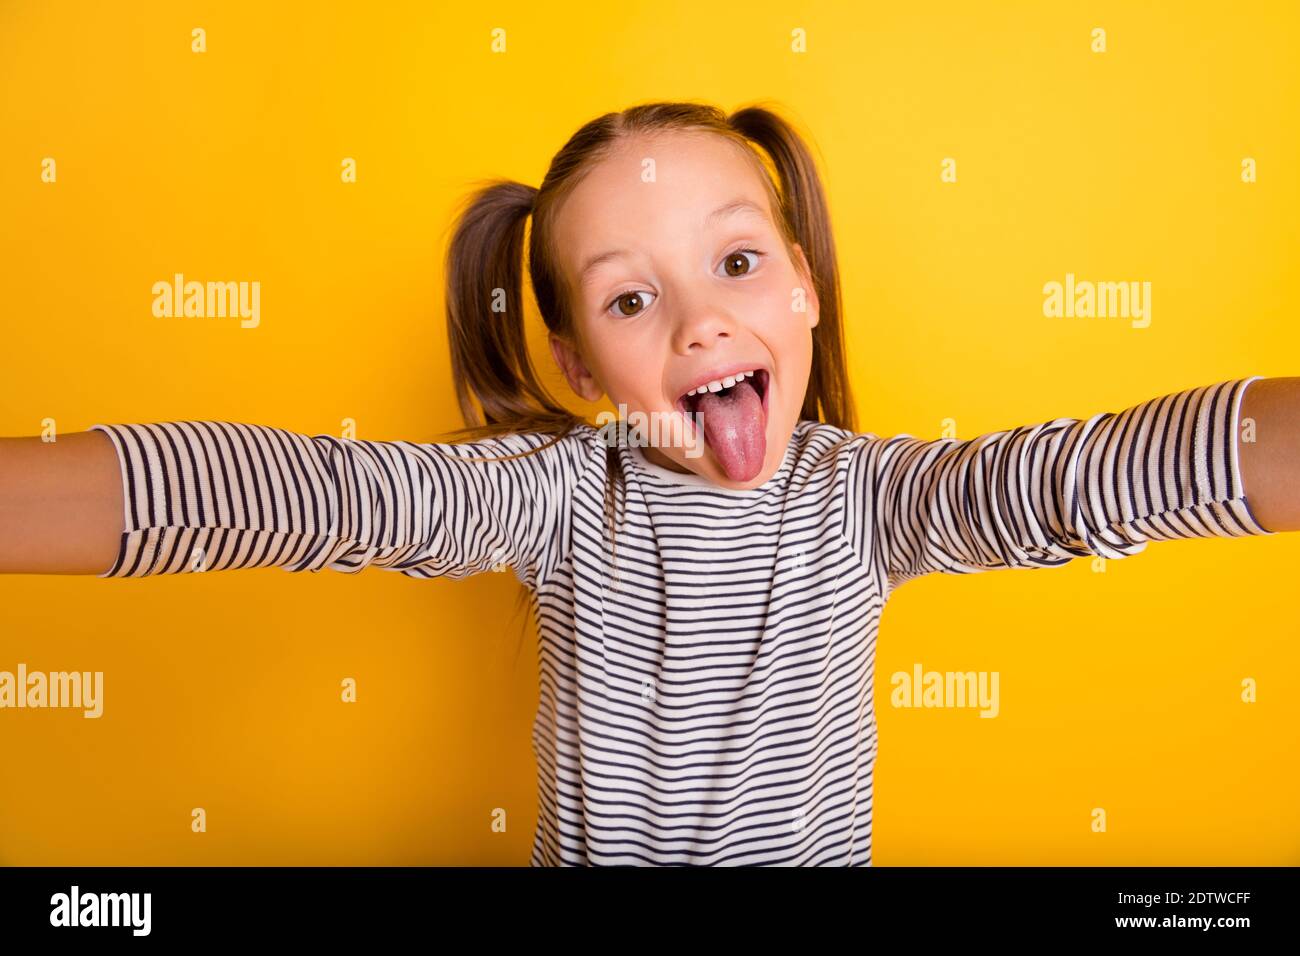 Portrait von jungen funky Narren spielerisch kleines Mädchen Kind Machen Selfie-Stick Zunge aus isoliert auf gelbem Hintergrund Stockfoto